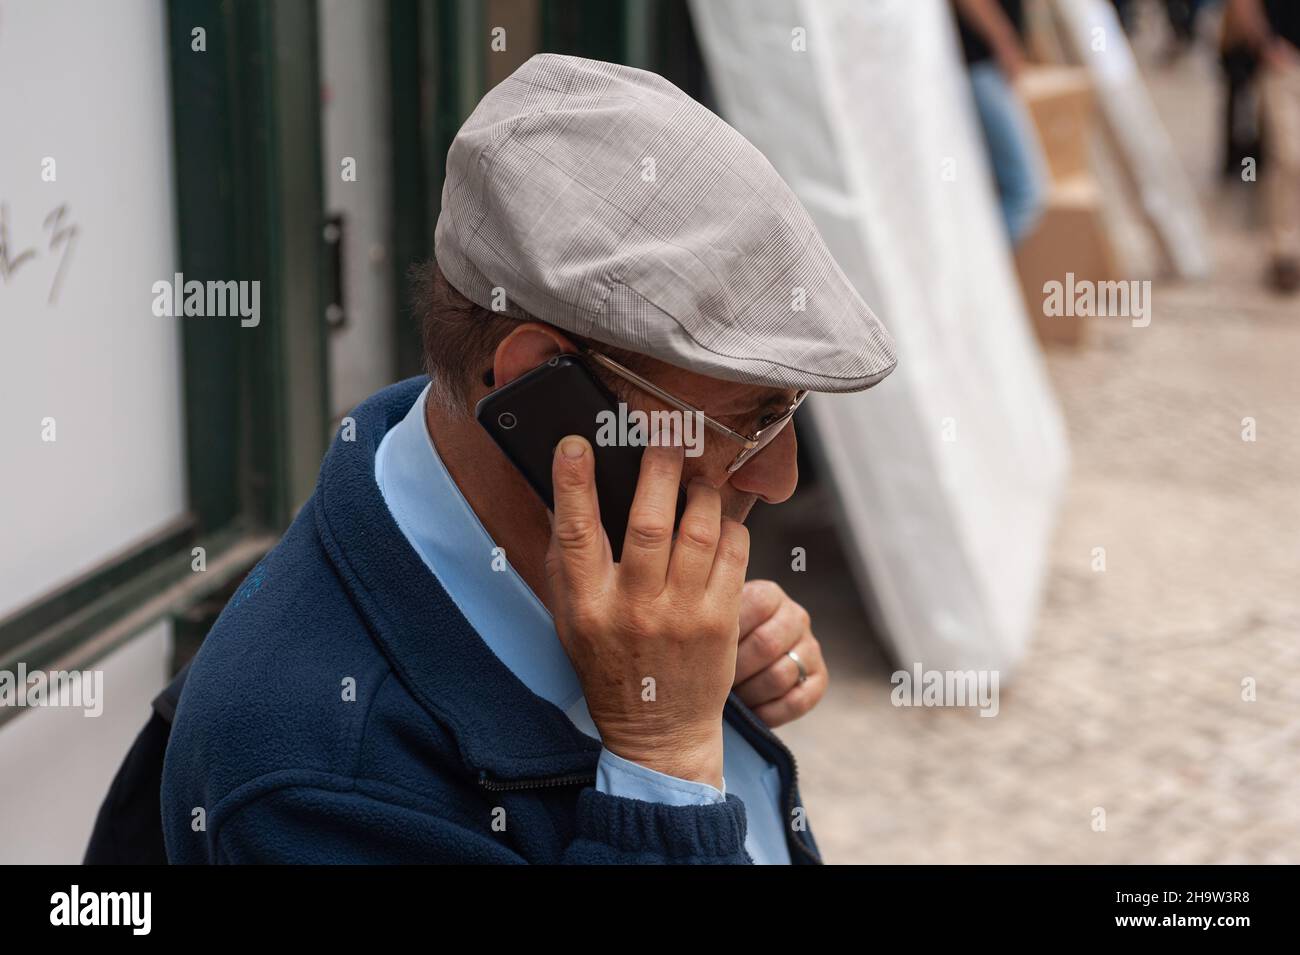 '11.06.2018, Portugal, Lisbonne - un homme âgé dans un chapeau de slouch parle sur son téléphone cellulaire dans la capitale portugaise.0SL180611D049CAROEX.JPG [RÉF. DU MODÈLE Banque D'Images